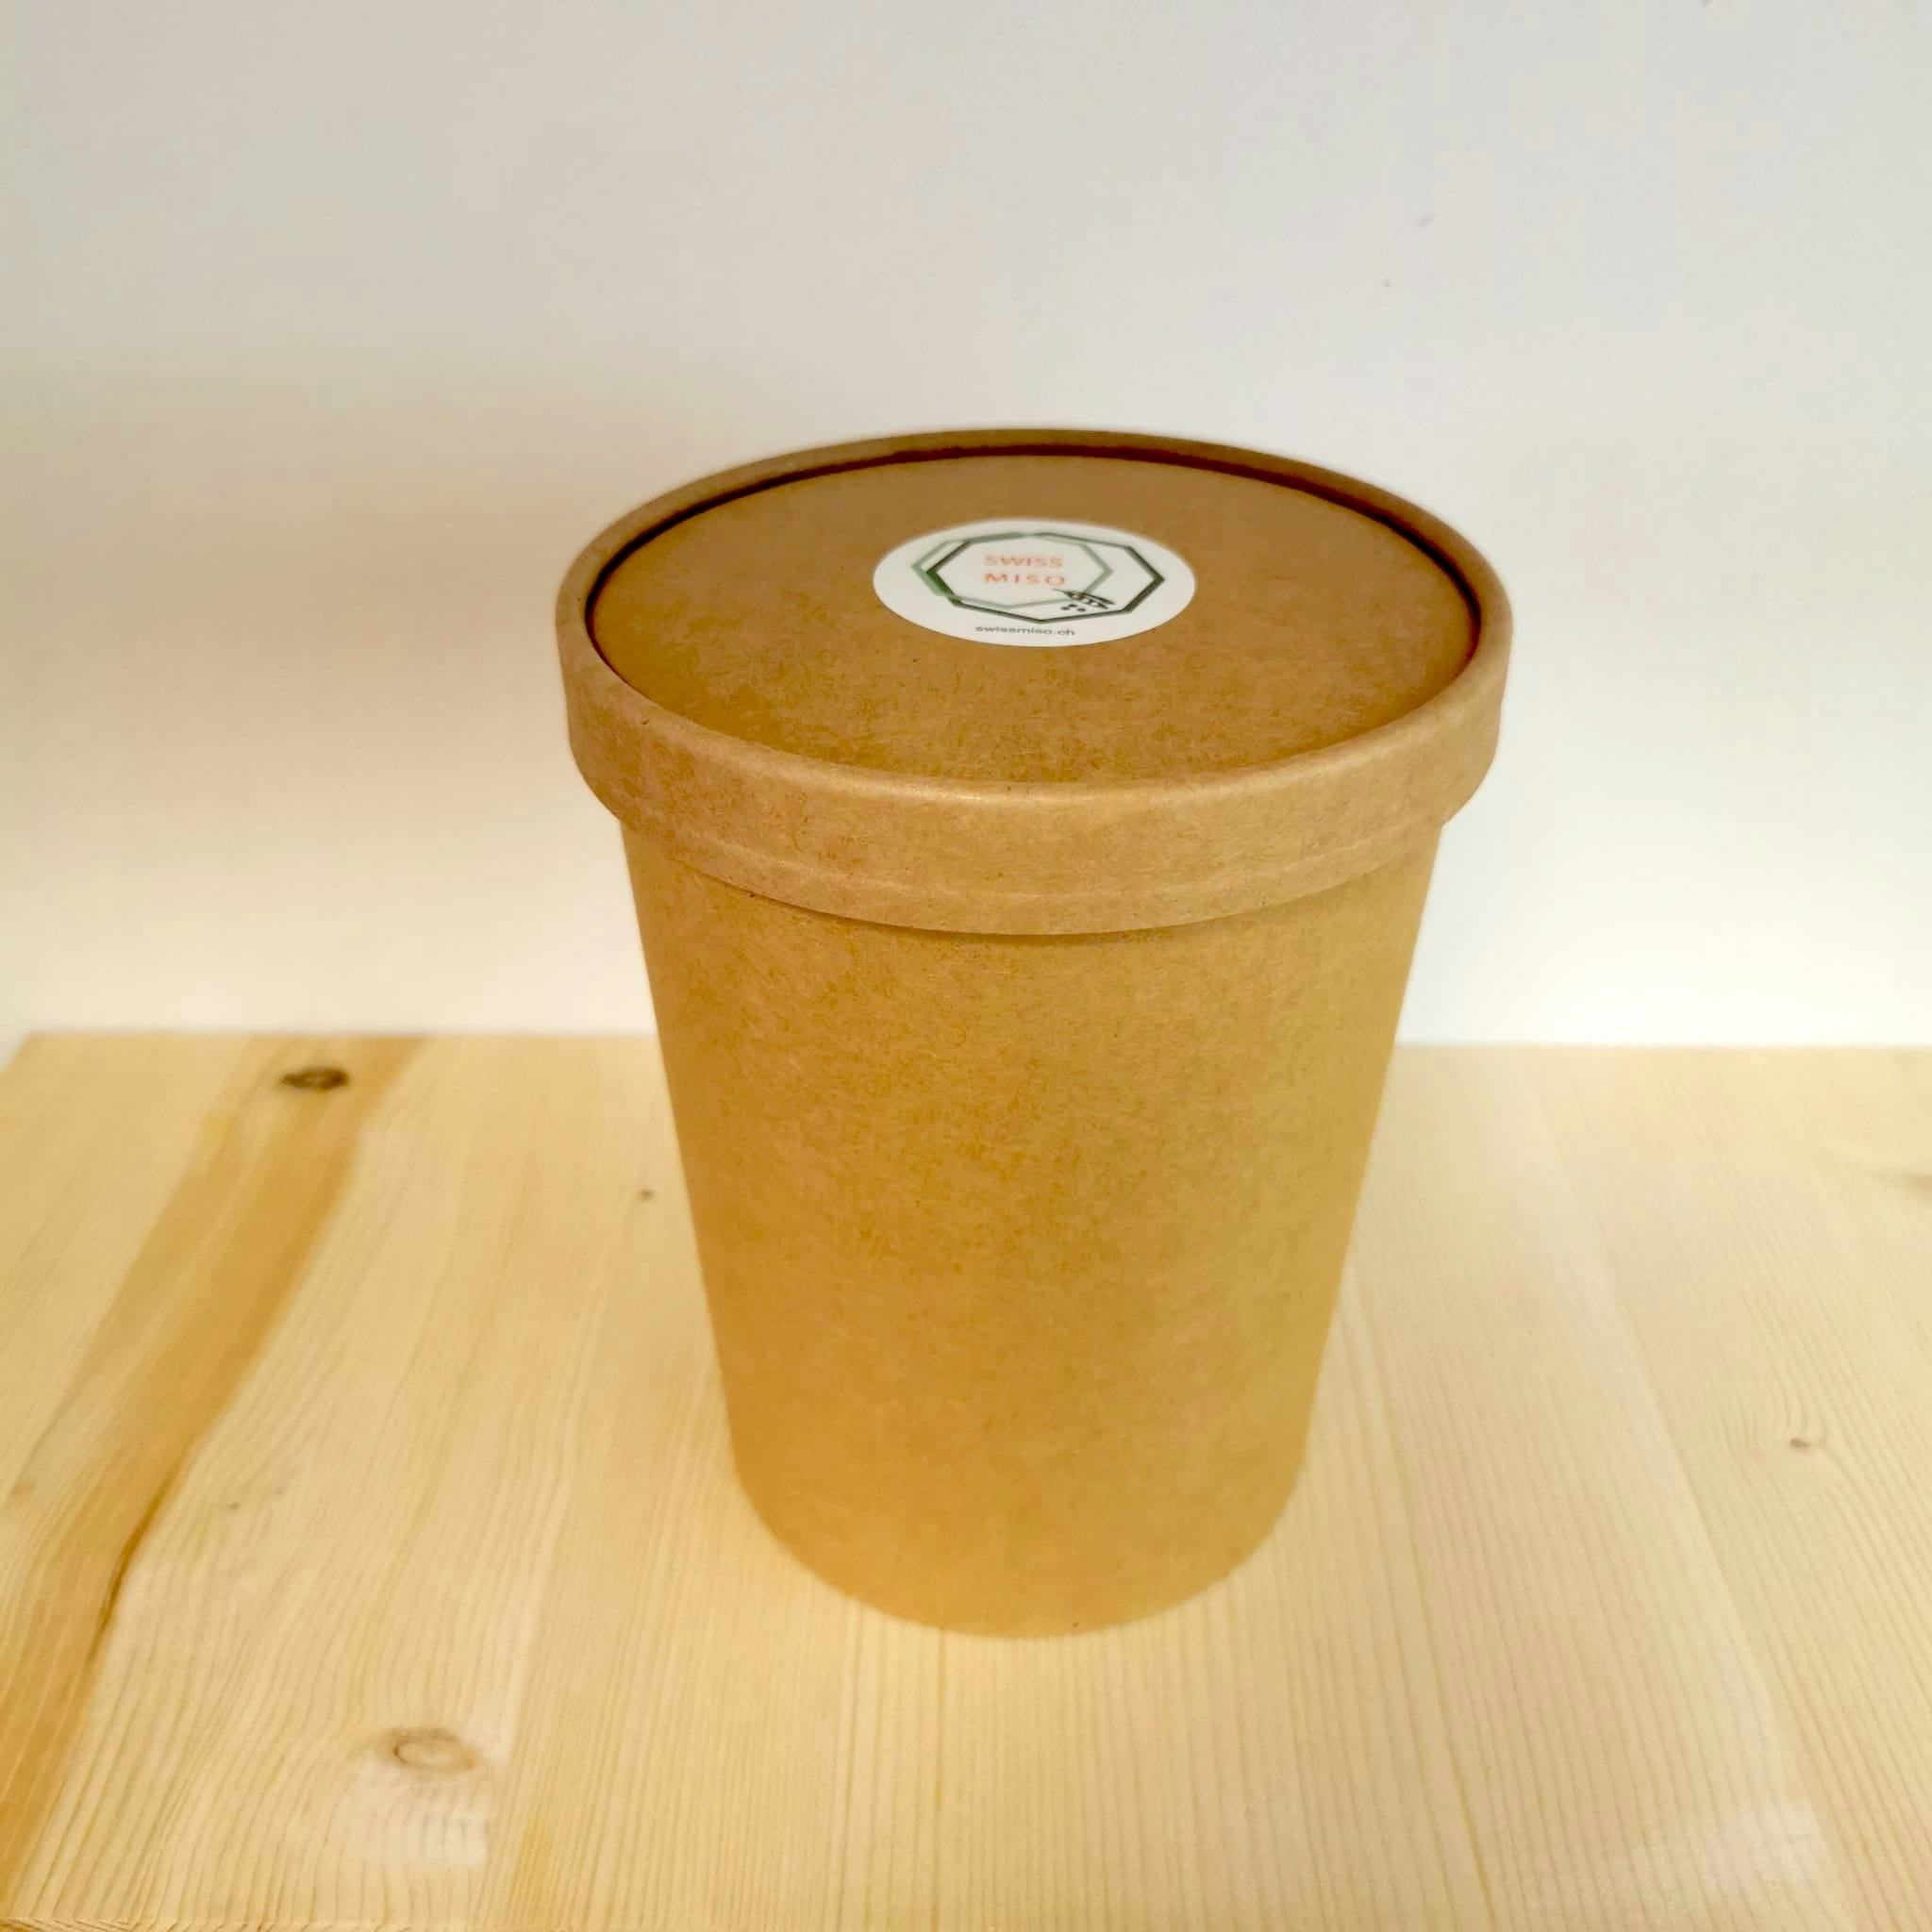 Miso-Gerste 1 kg in ECO-Verpackung, SWISSMISO, Nyon, image 2 | Mimelis